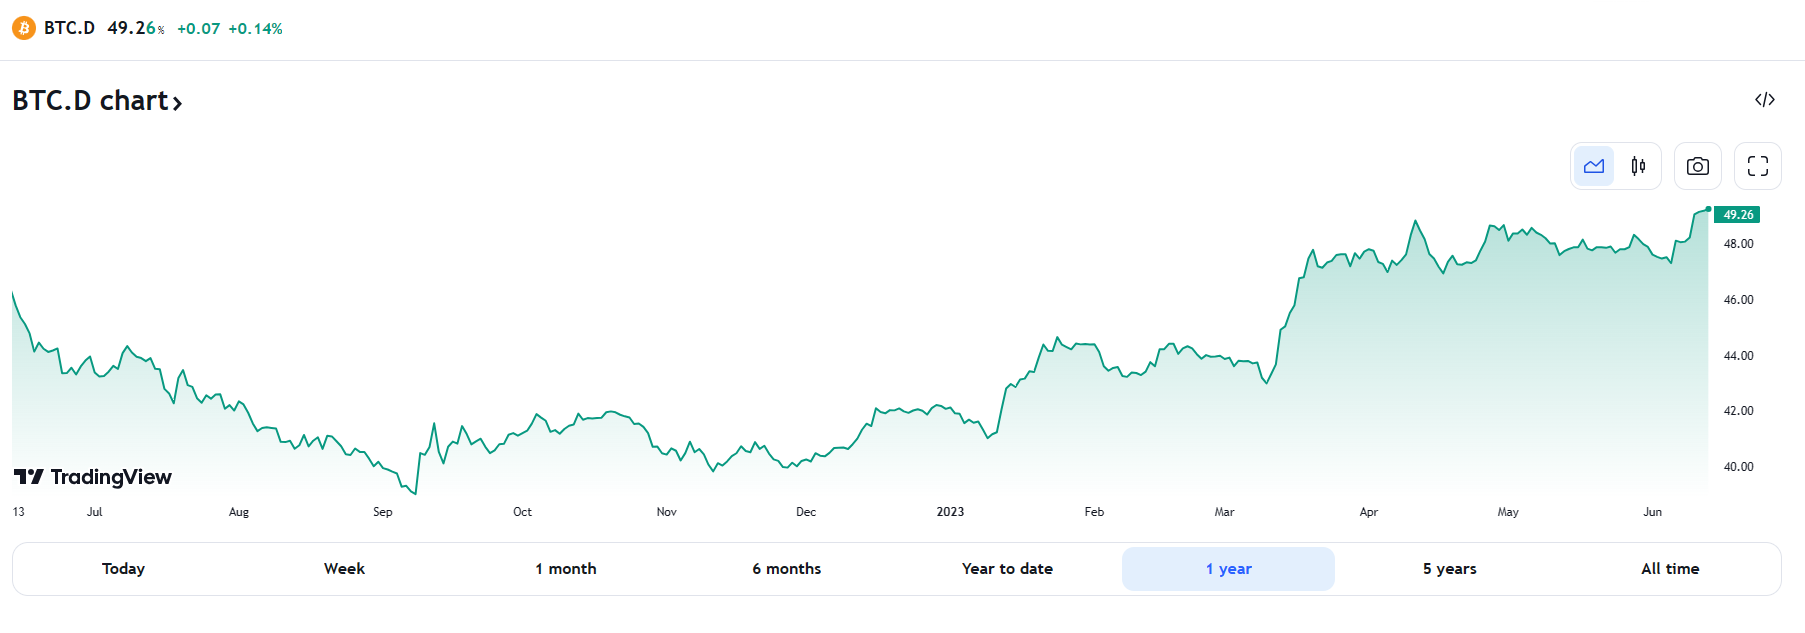 bitcoin dominance chart 13061